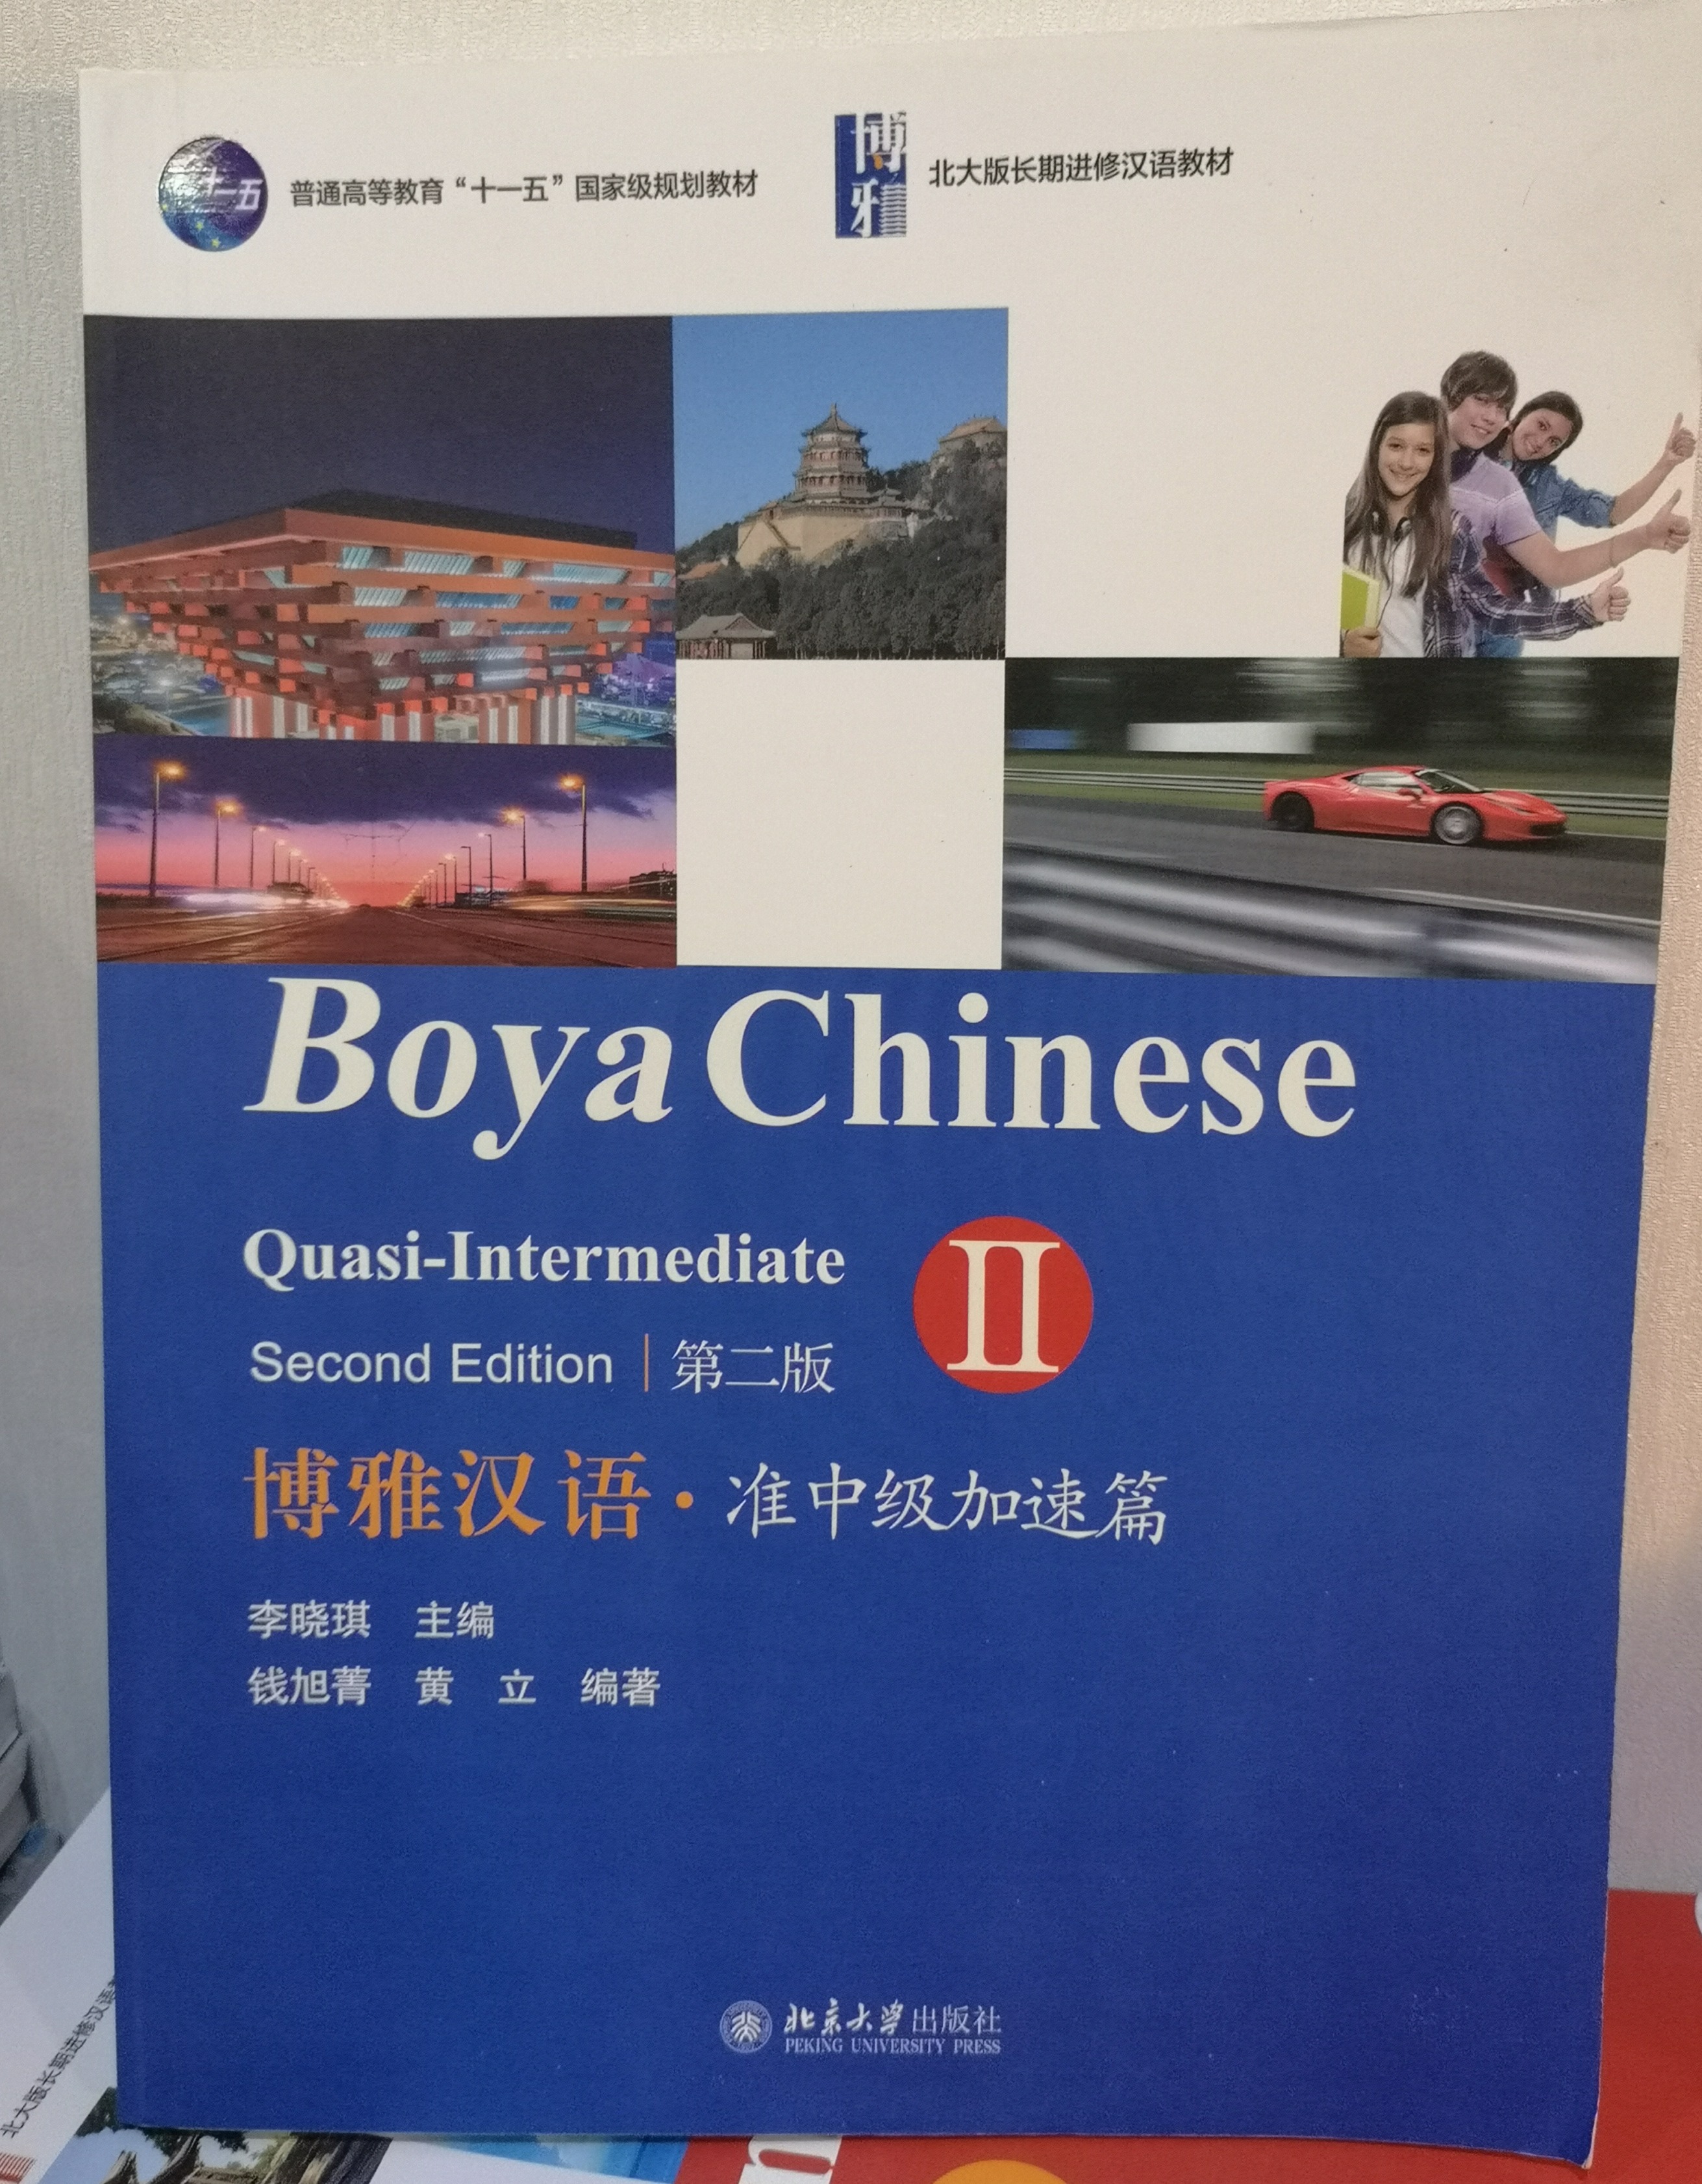 แบบเรียนภาษาจีน  博雅汉语 准中级加速篇 II (第二版） Boya Chinese Quasi-Intermediate II (2nd Edition)(+ 1 MP3-CD)